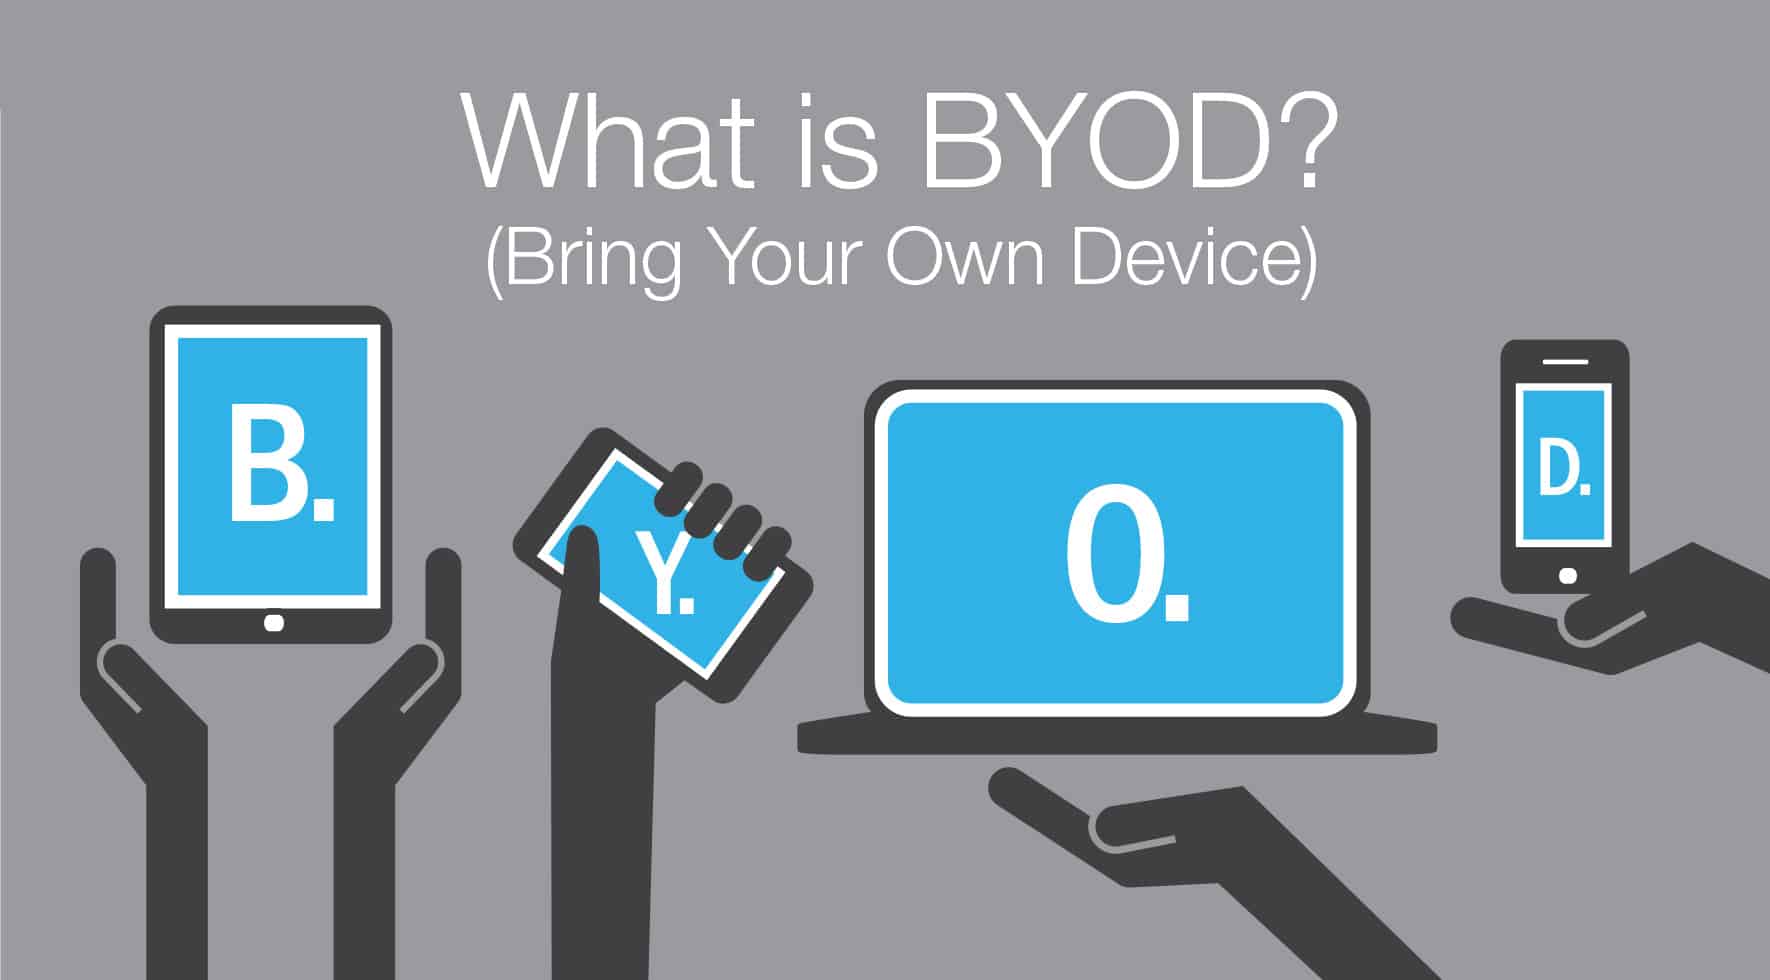 Mang theo thiết bị của riêng bạn (BYOD)